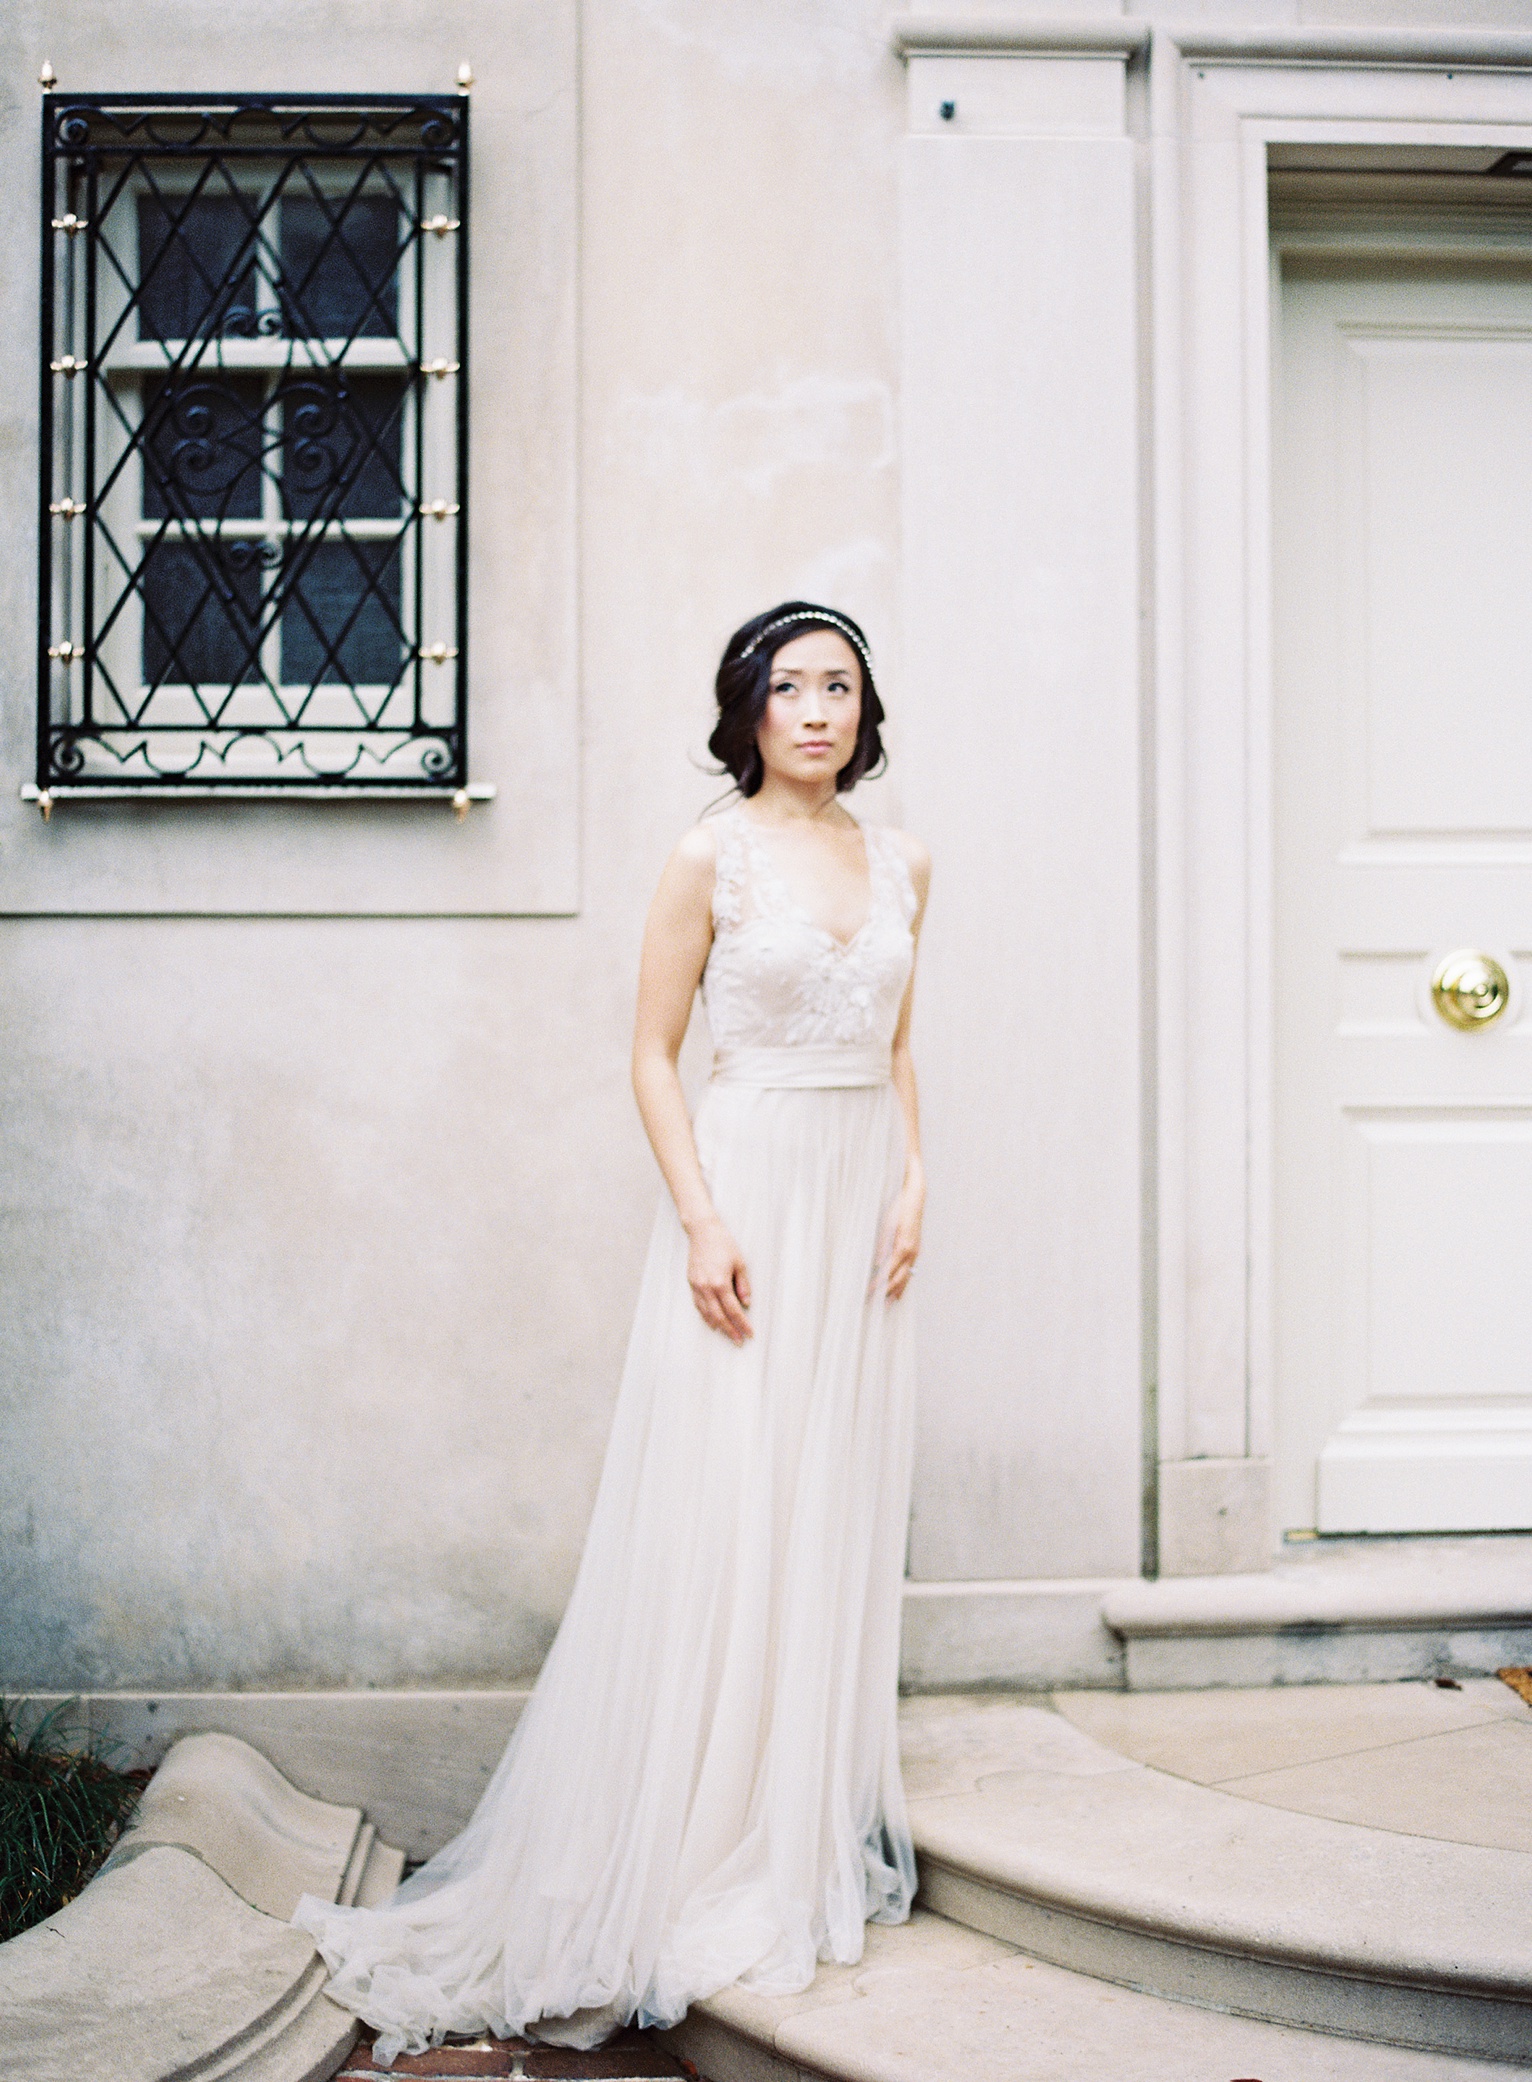 Onyx Gown by Catherine Deane - Elizabeth Anne Designs: The Wedding Blog